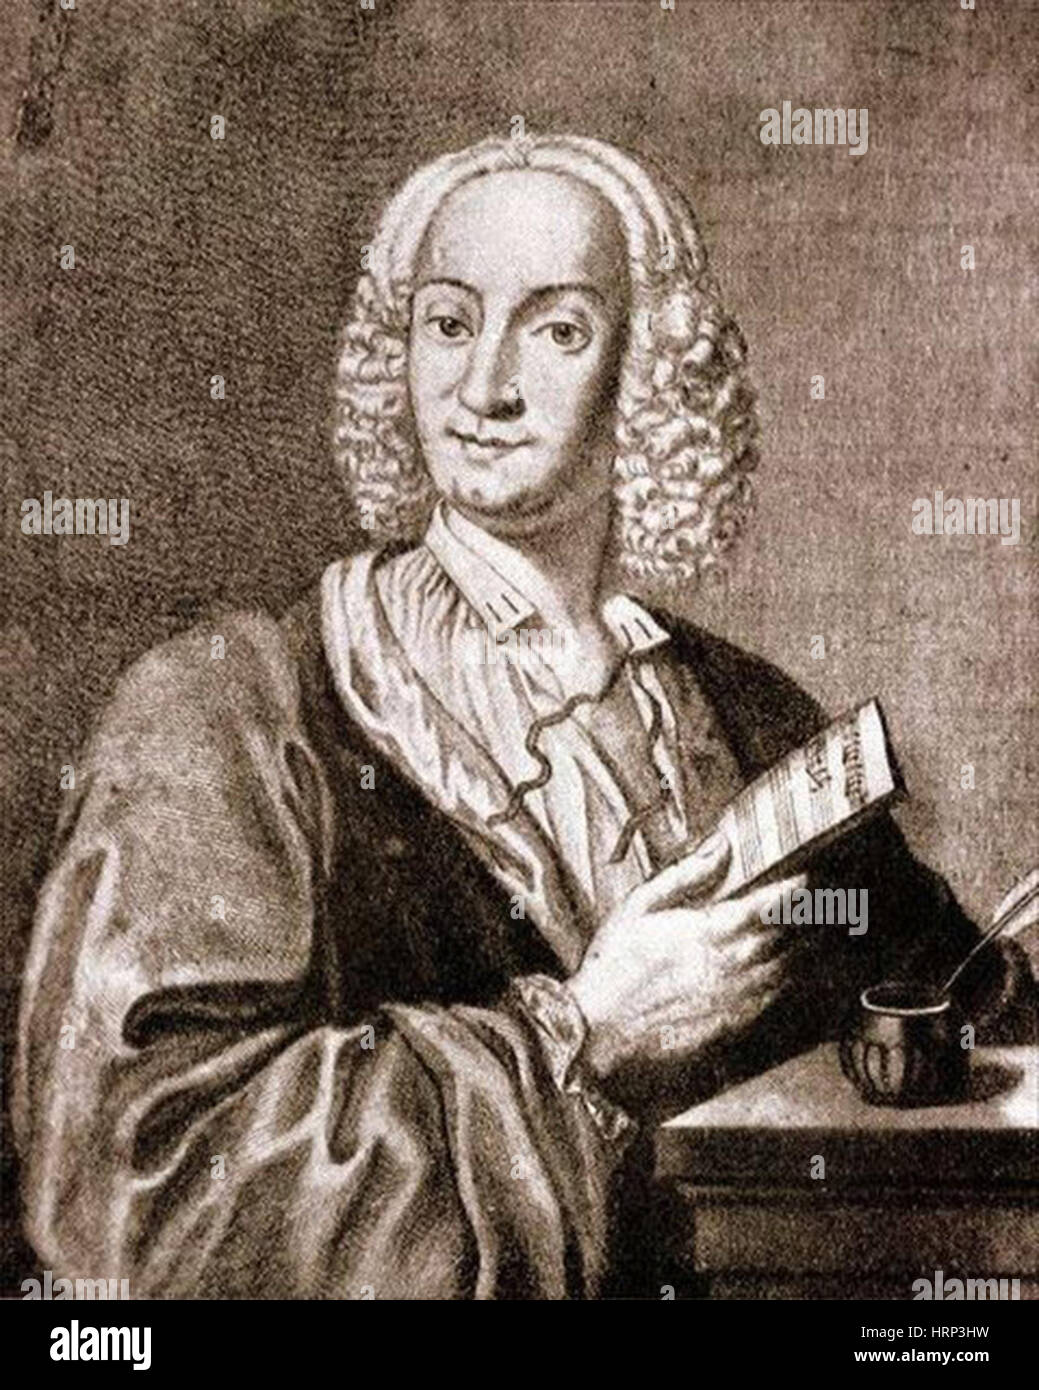 Antonio Vivaldi, compositeur italien Banque D'Images